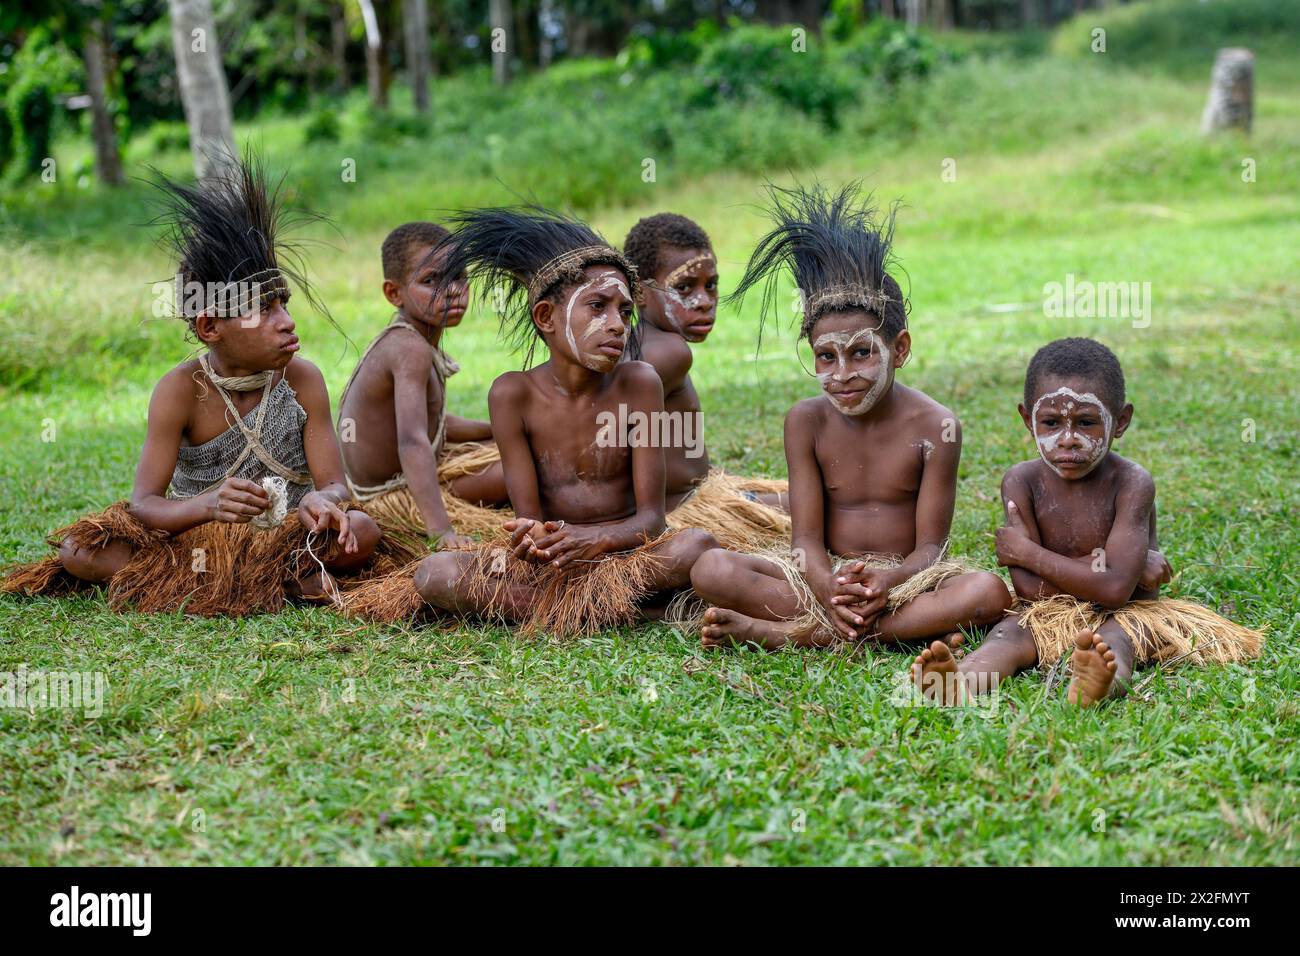 Géographie / voyage, Papouasie-Nouvelle-Guinée, enfants avec coiffe en plumes de Cassowary Feathers, ADDITIONAL-RIGHTS-CLEARANCE-INFO-NOT-AVAILABLE Banque D'Images